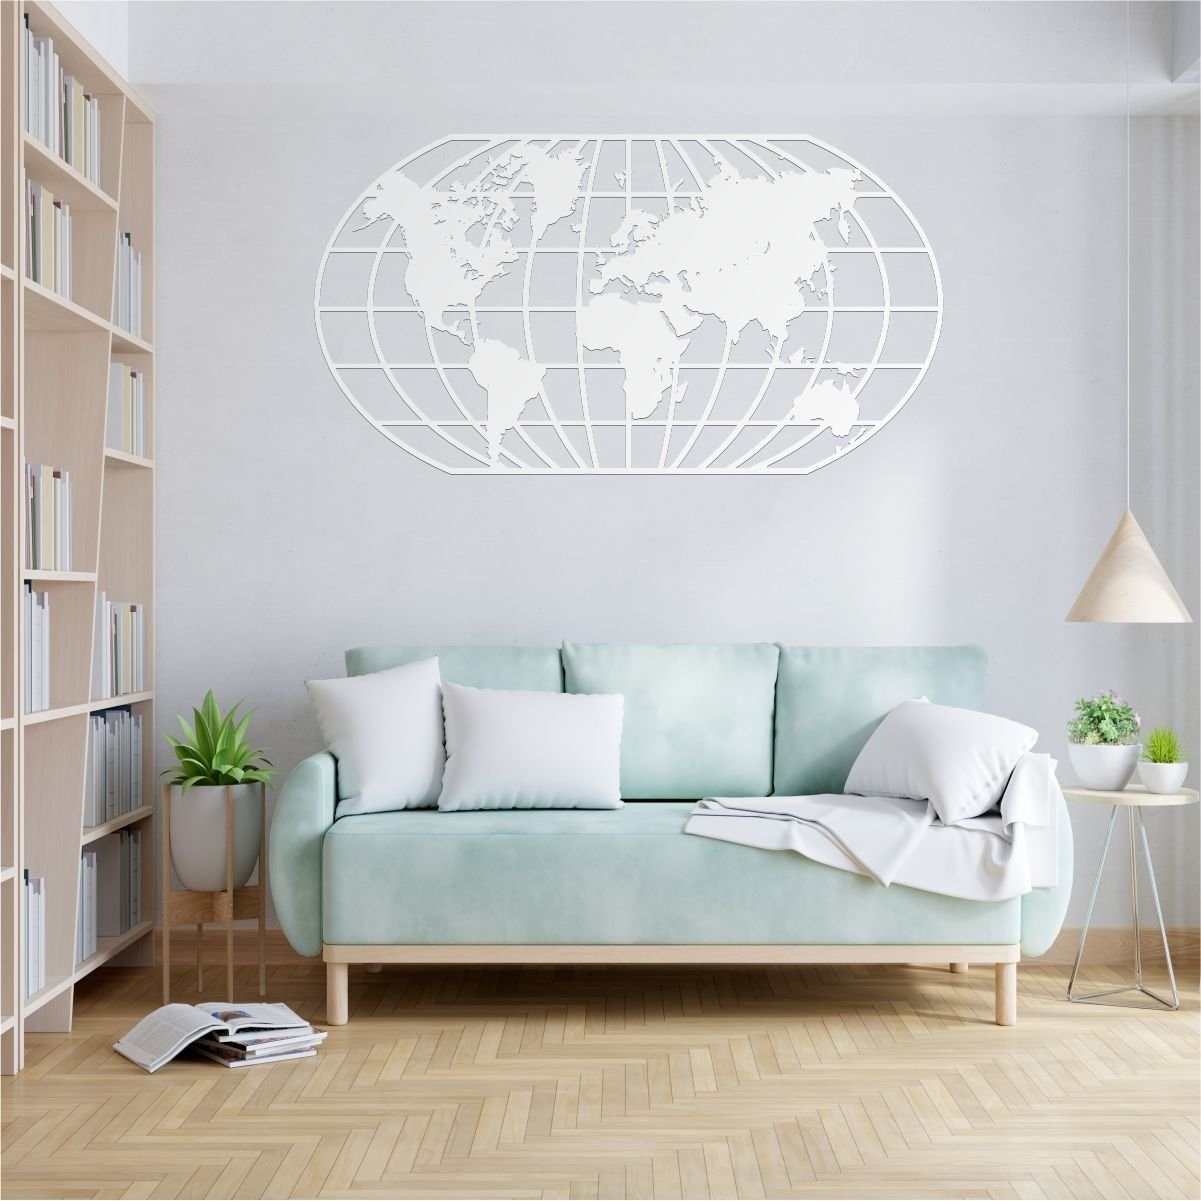 Quadro Decoração Vazado Mapa Mundi World Uno Branco 100x54 Cm - 5